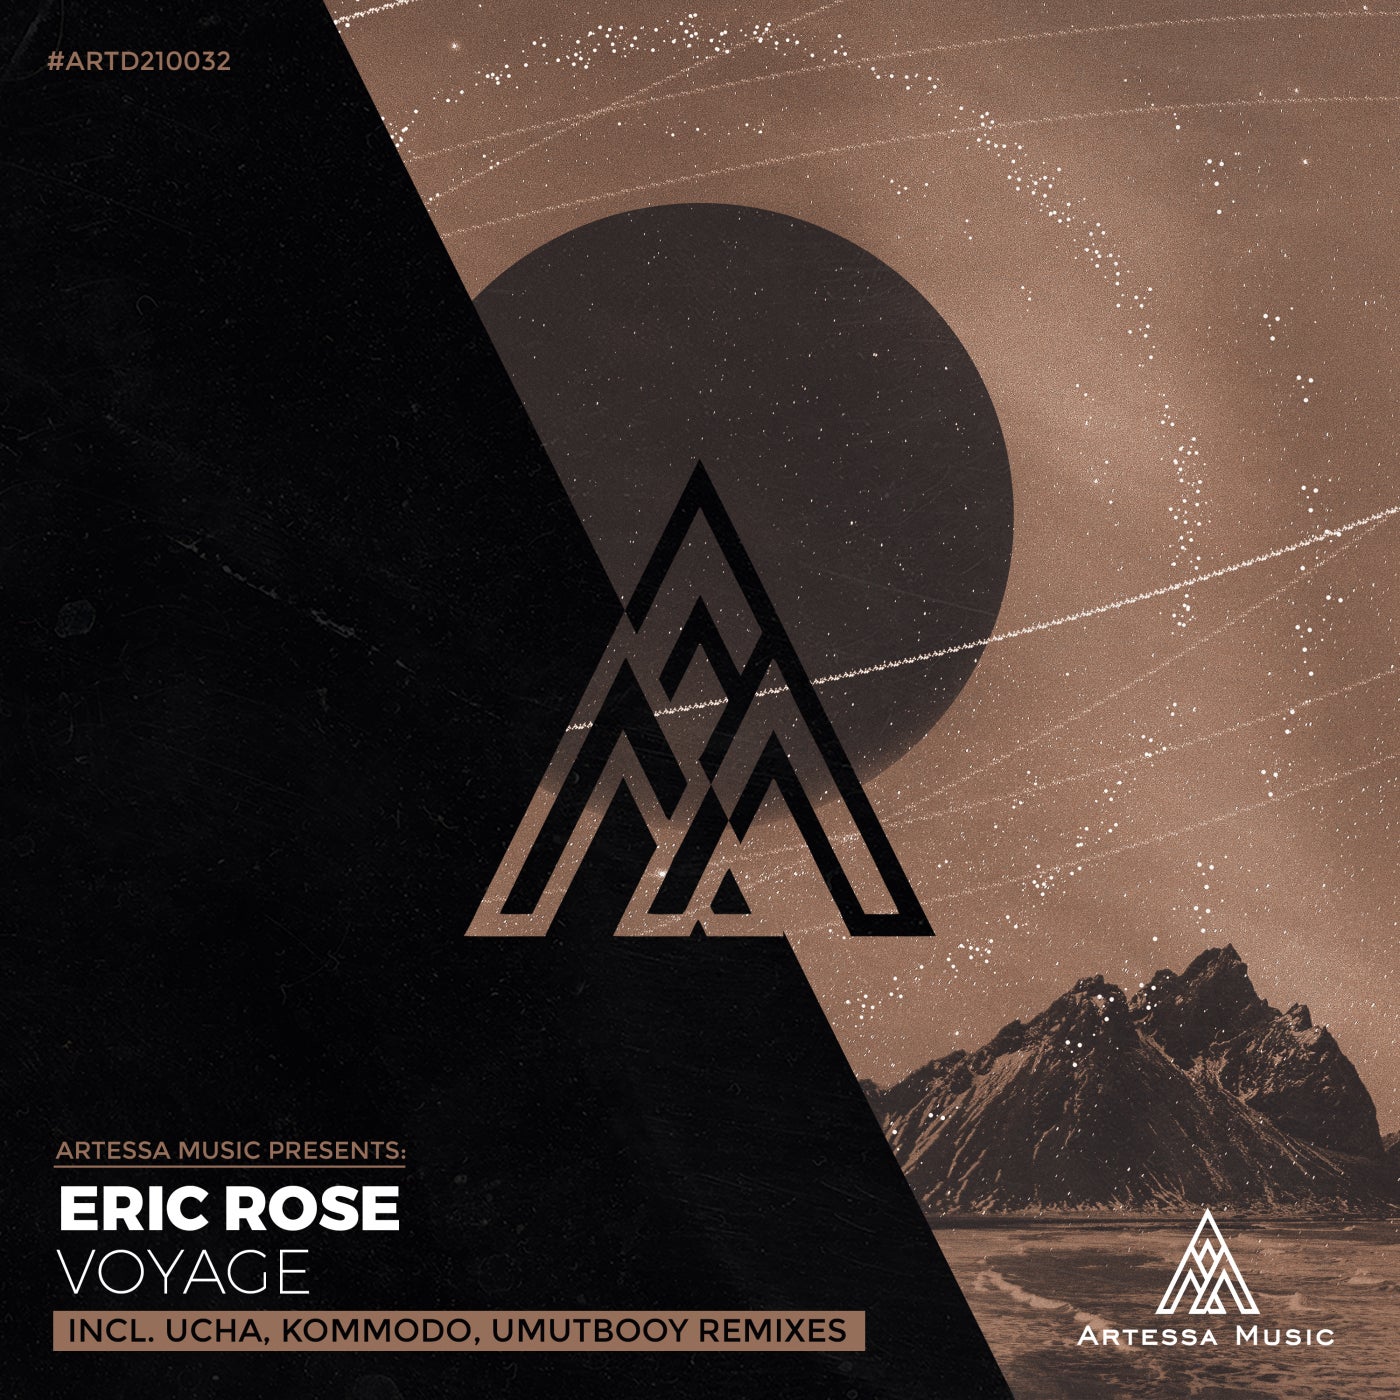 Eric Rose - Voyage [ARTD210032]